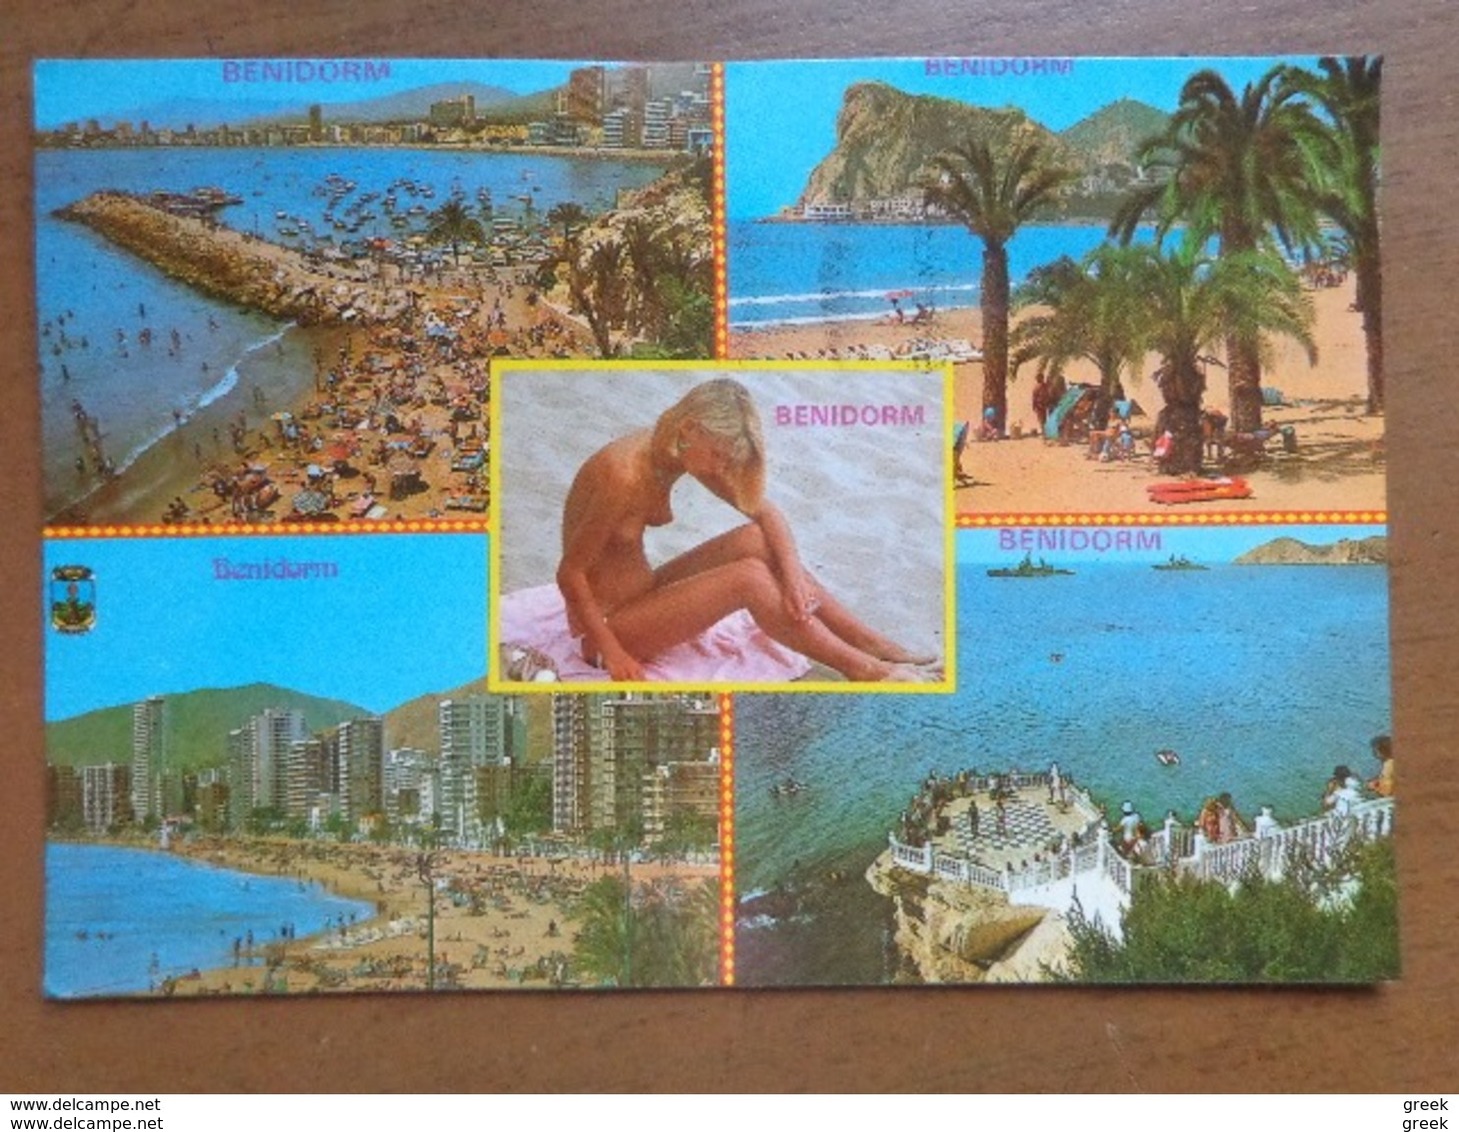 Doos postkaarten (3kg940) Allerlei landen en thema's, zie foto's (Naakt, Transport, humor ...)